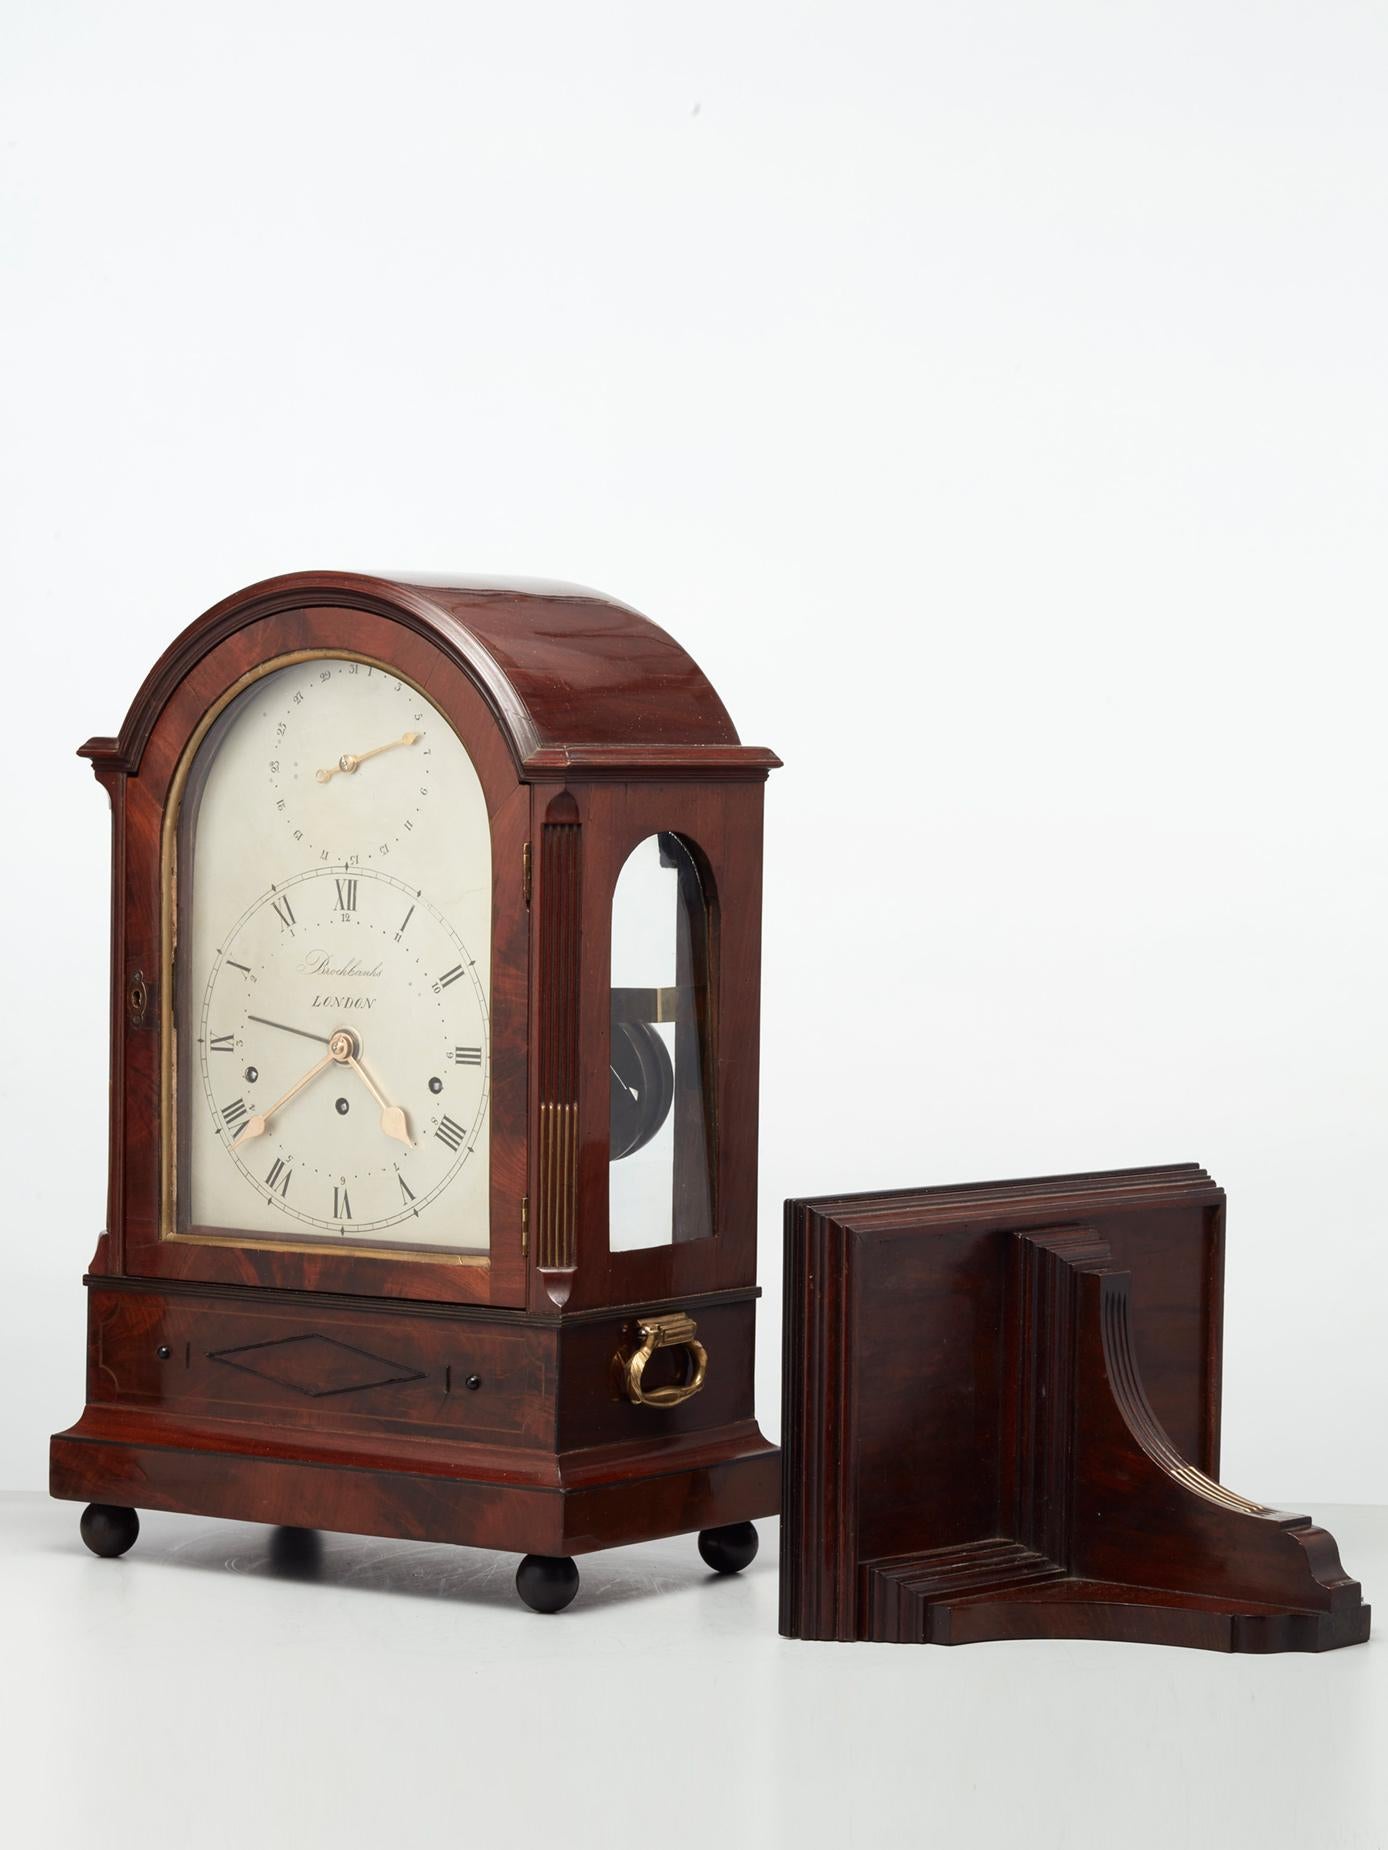 Pendule à console en acajou de style Régence anglaise, milieu du XIXe siècle, très différente, avec console assortie, vers 1830.

L'étui est doté d'un couvercle arqué et d'ouvertures latérales en verre arqué, les coins étant décorés d'une